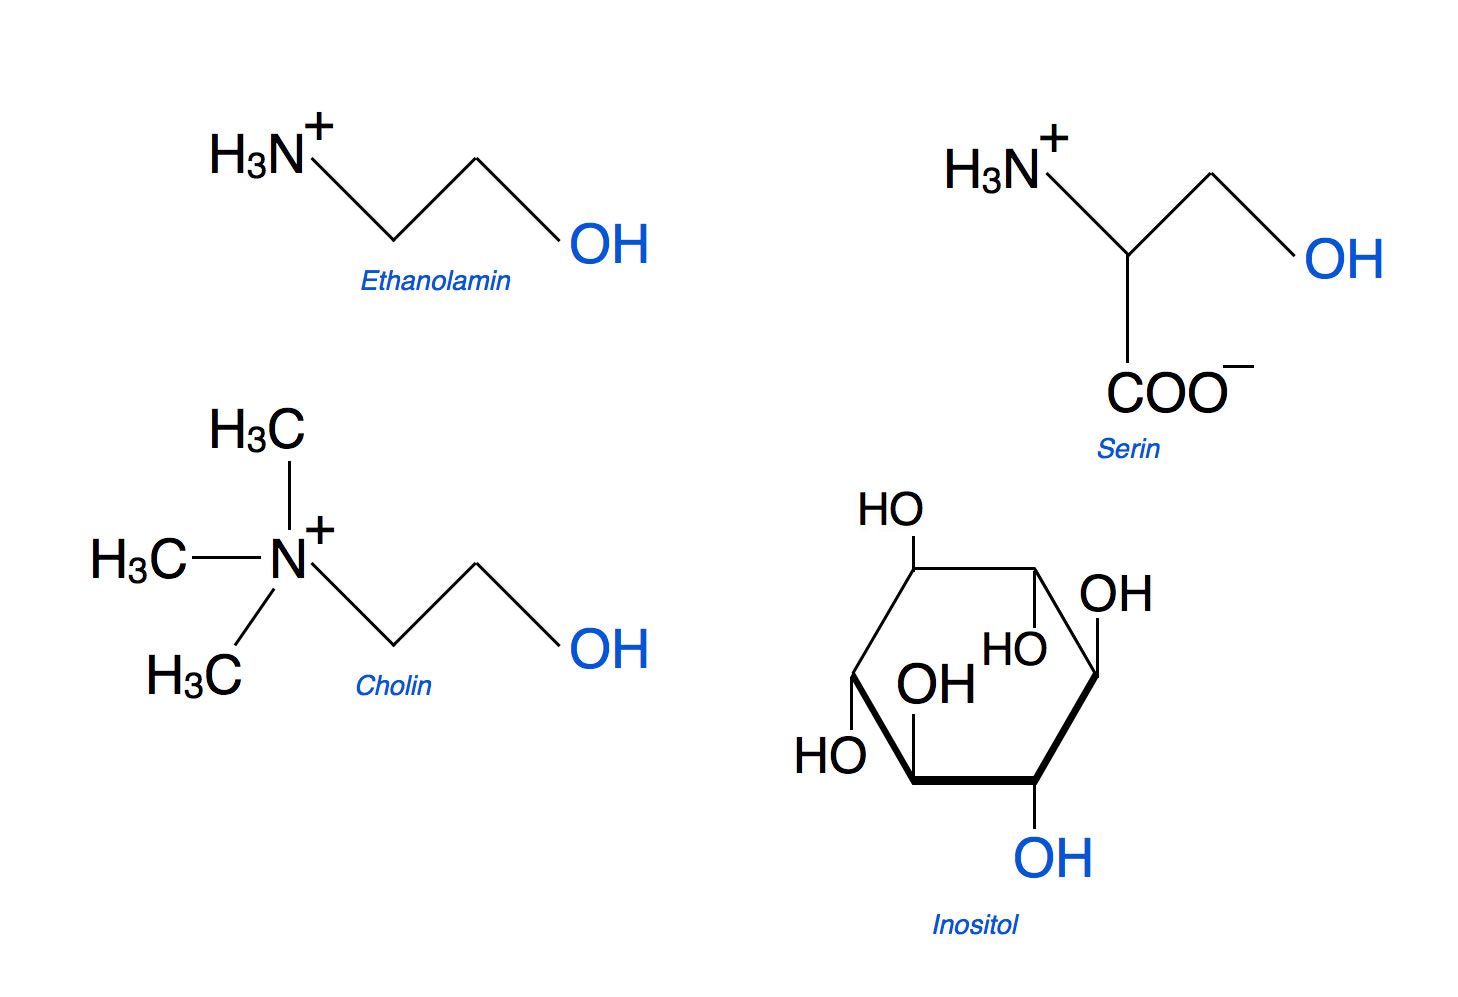 Organische Alkohole in Phospholipiden: Cholin, Ethanolamin, Serin und Inositol